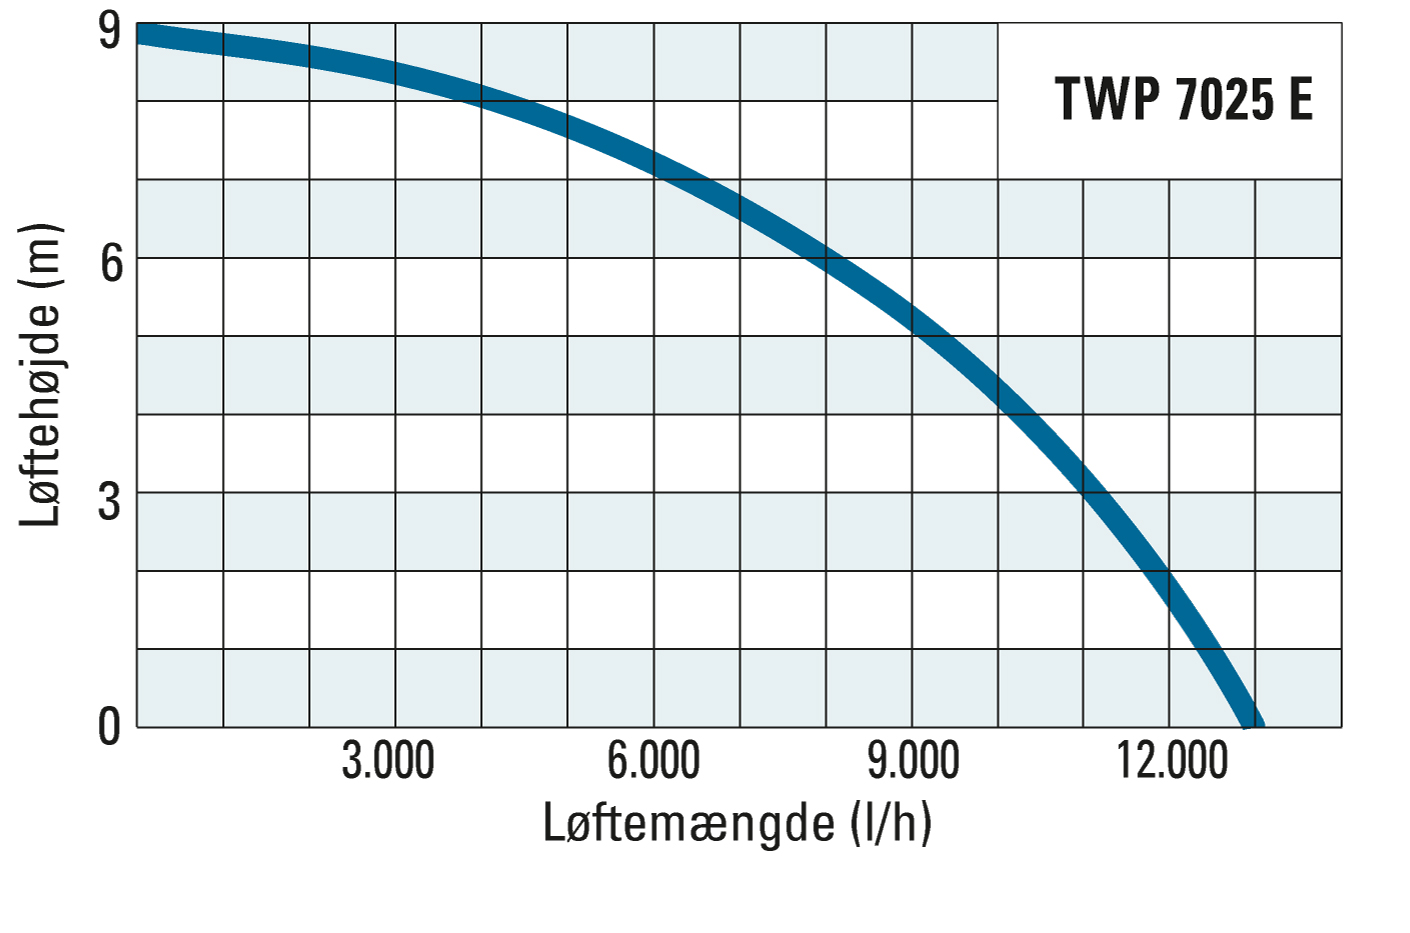 Transporthøjde og transportmængde for TWP 7025 E